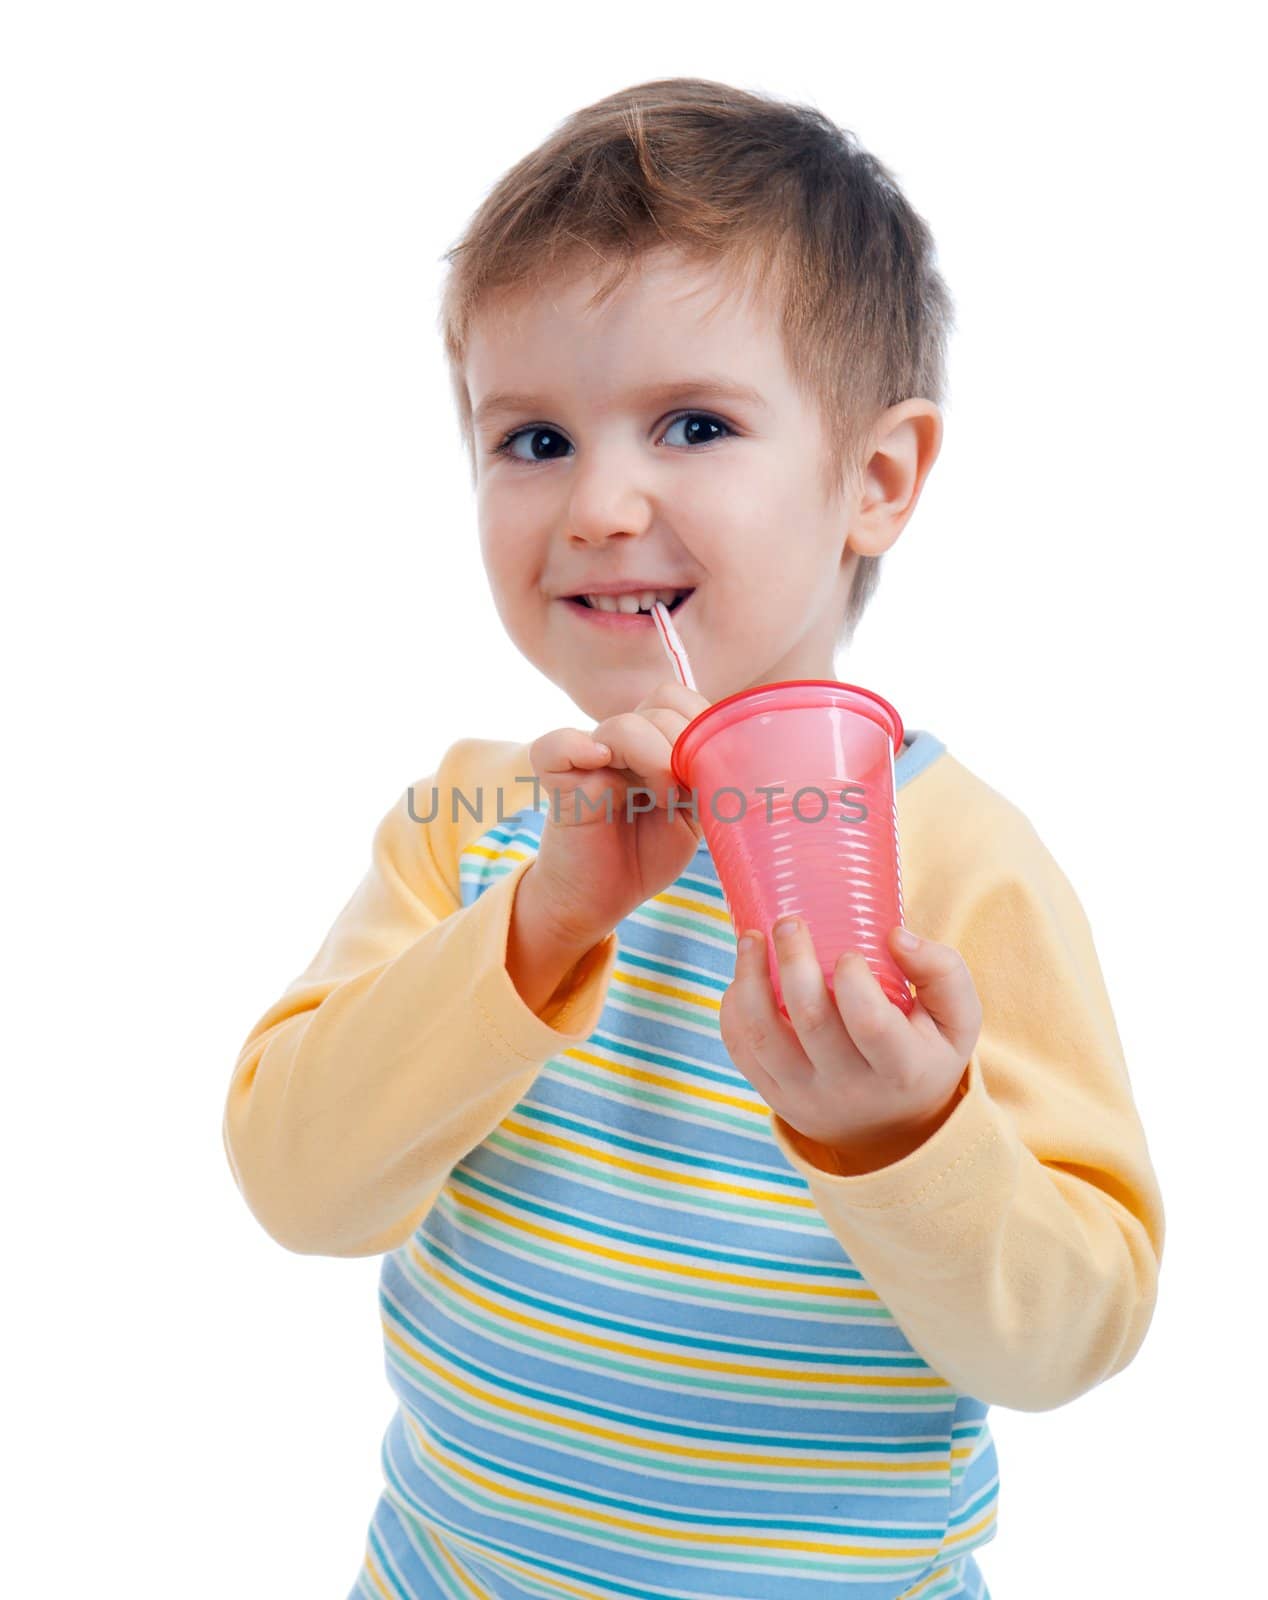 Boy drinking juice isolated on white 